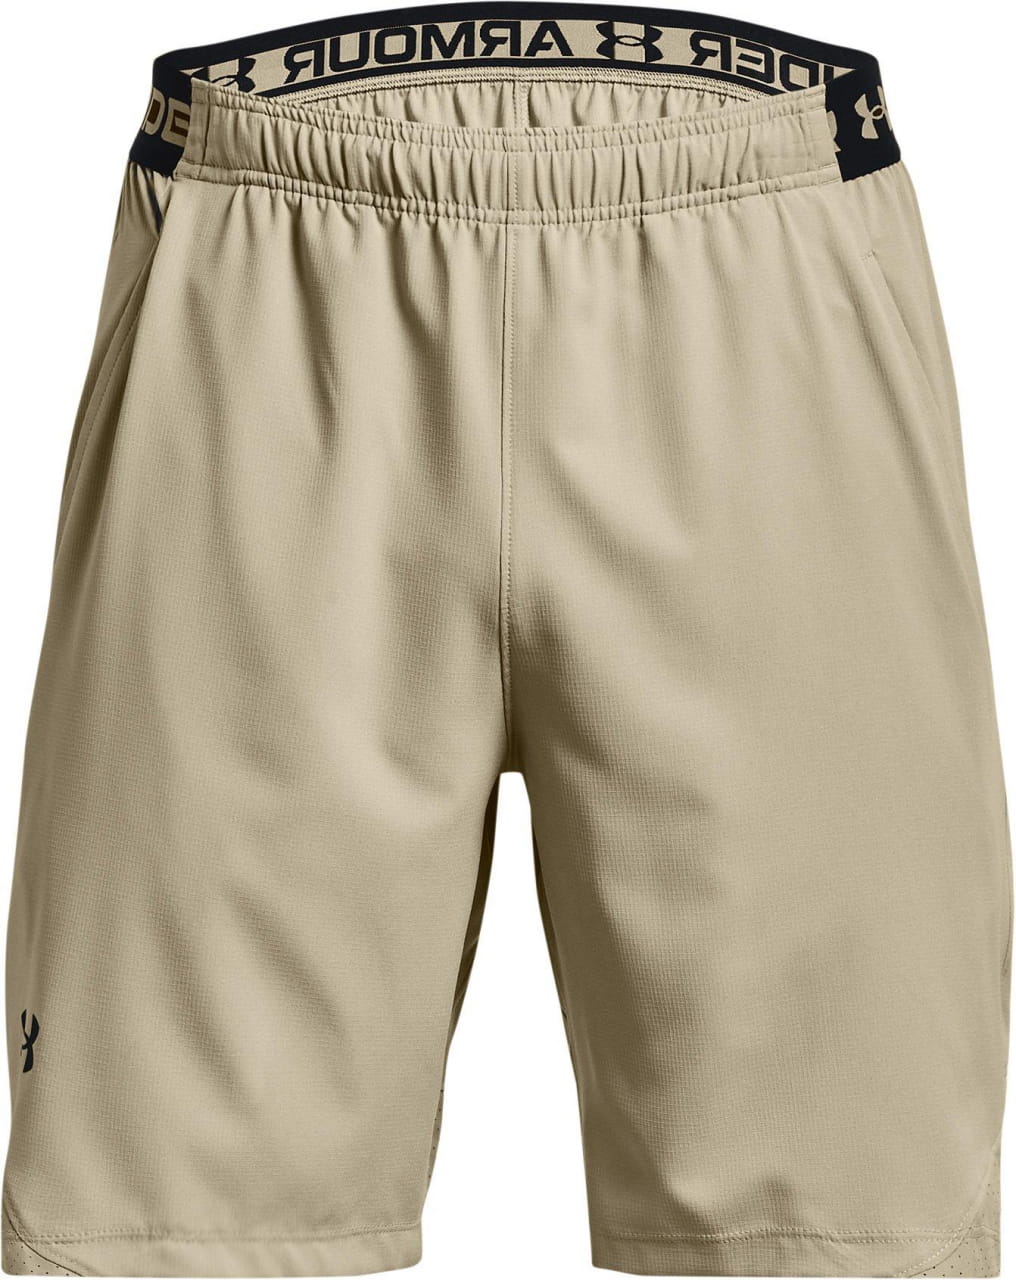 Pantalones cortos de deporte para hombre Under Armour Vanish Woven 8in Shorts-GRY